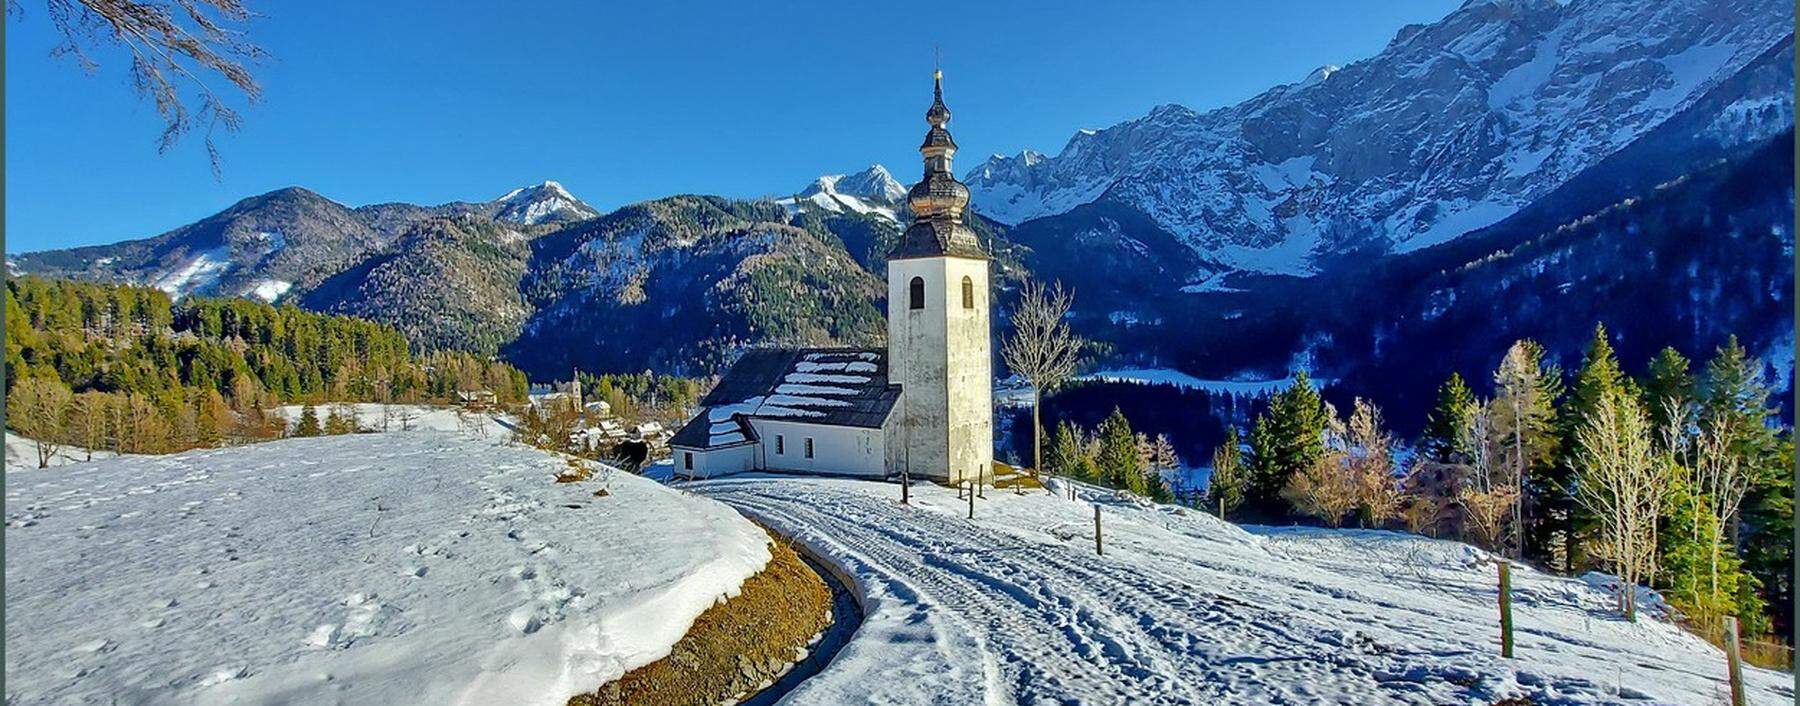 Das Bergsteigerdorf Jezersko liegt inmitten der Steiner Alpen (Kamniško-Savinjske Alpe) und der Karawanken (Karavanke) im Norden Sloweniens. Langläufer schätzen das Gelände, es geht weit und flach dahin.